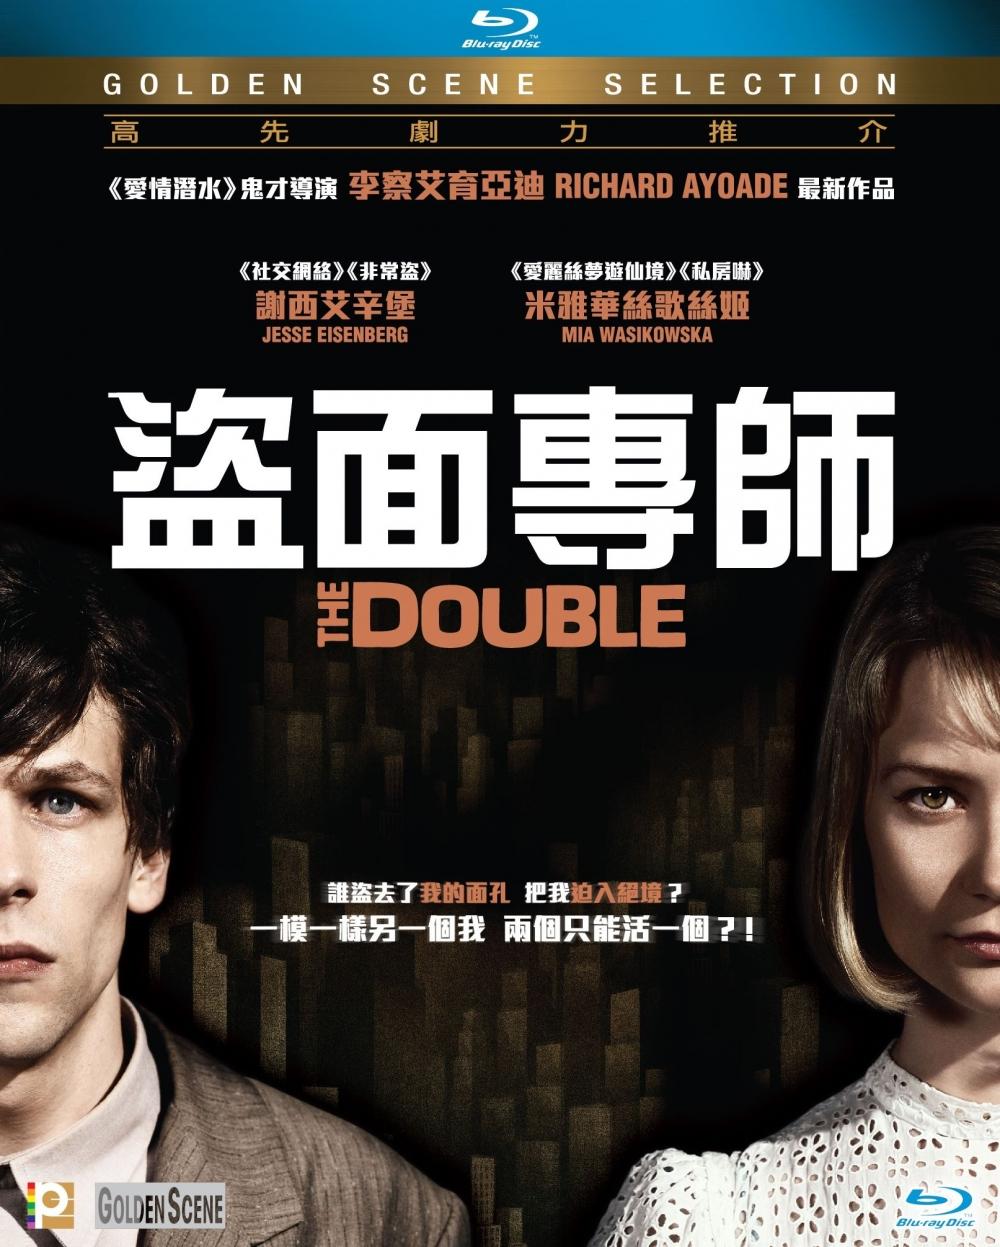 香港版 2015 Blu-ray 封面